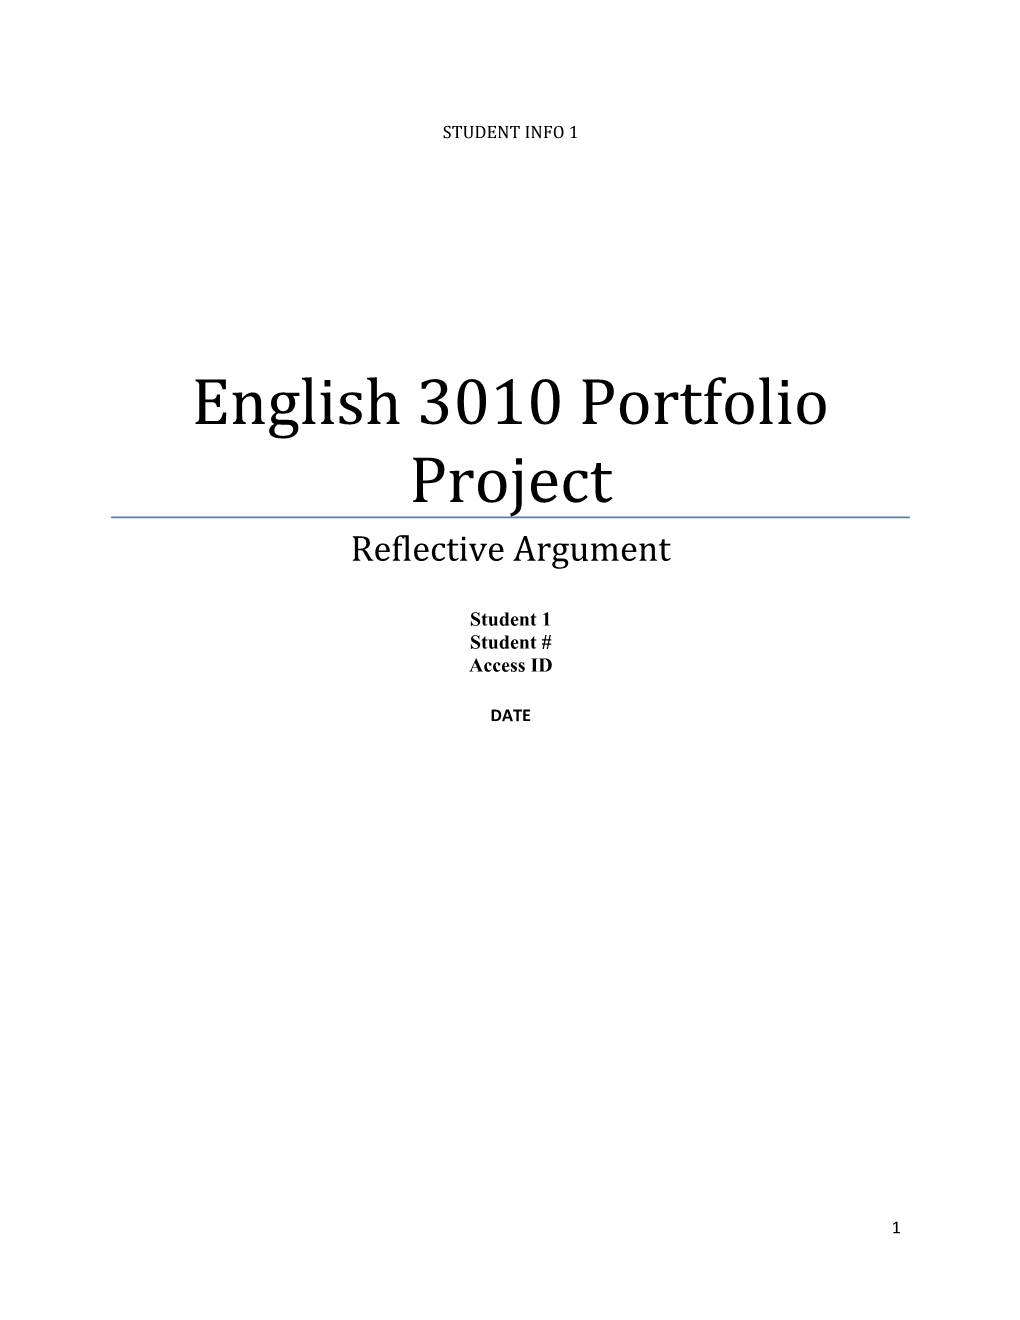 English 3010 Portfolio Project